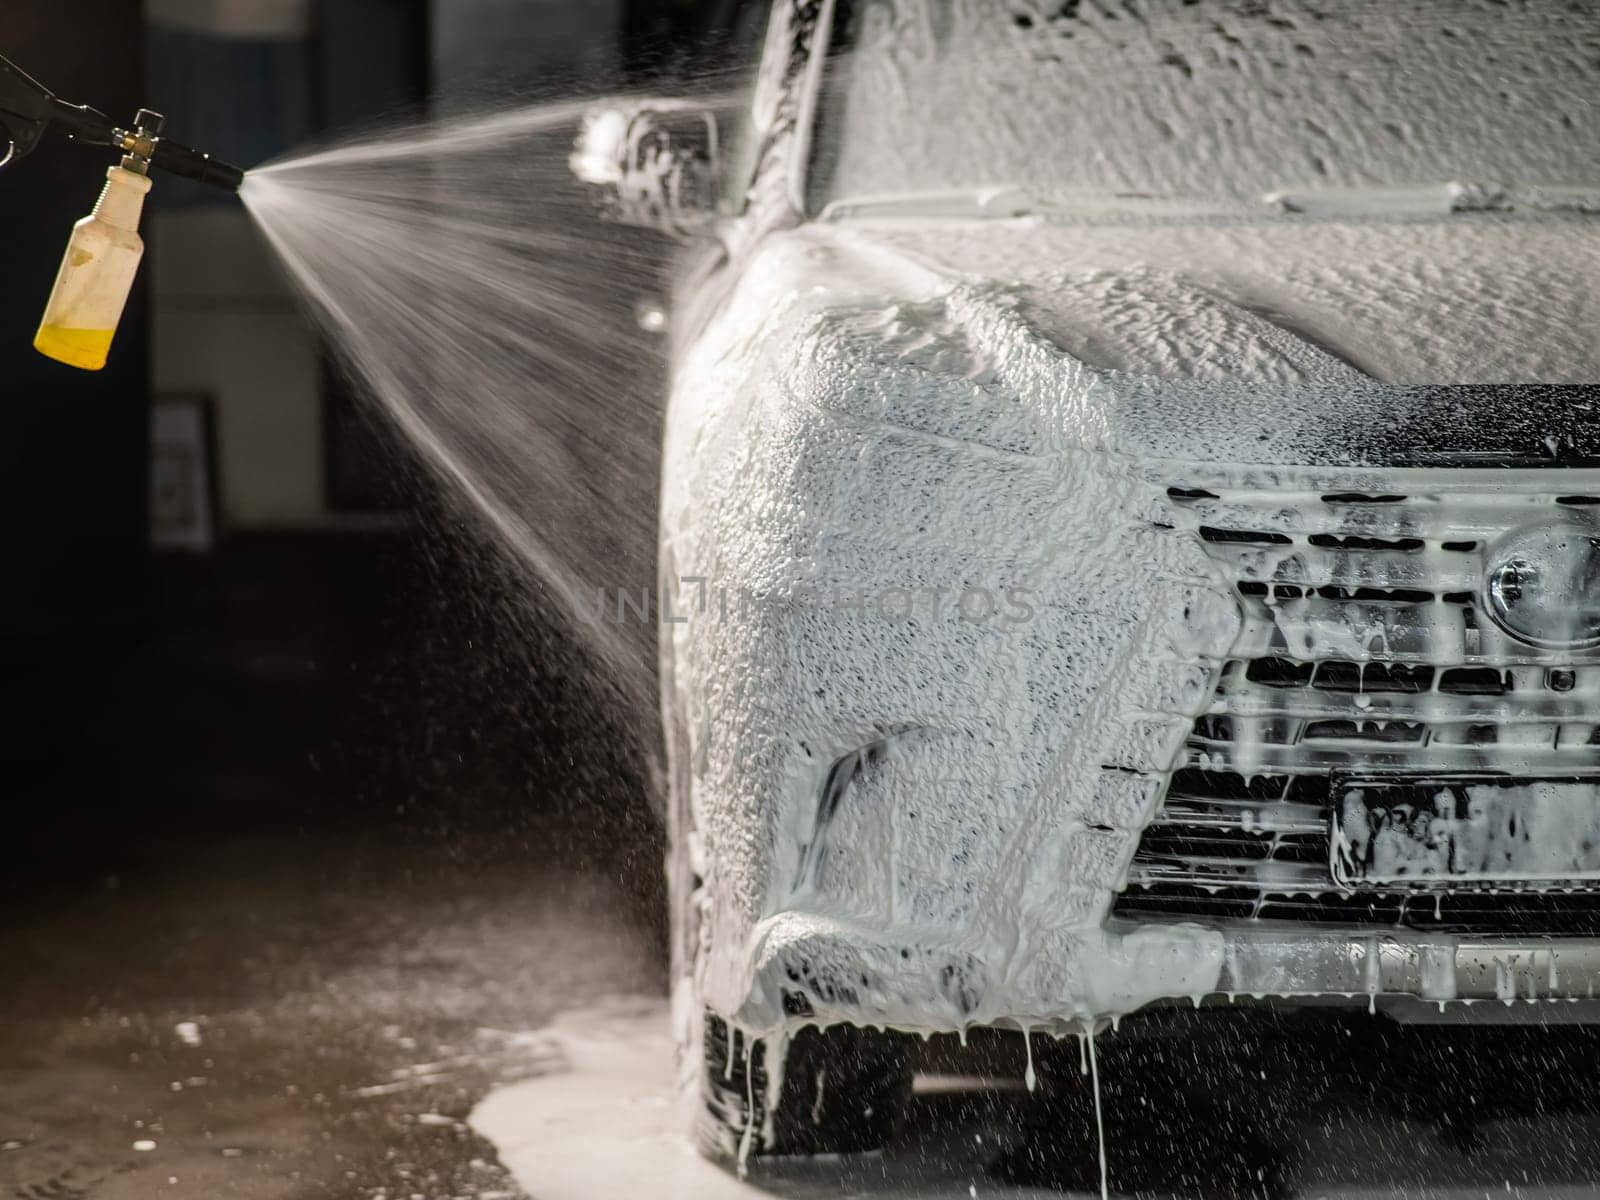 Man applying foam to black car in car wash. by mrwed54